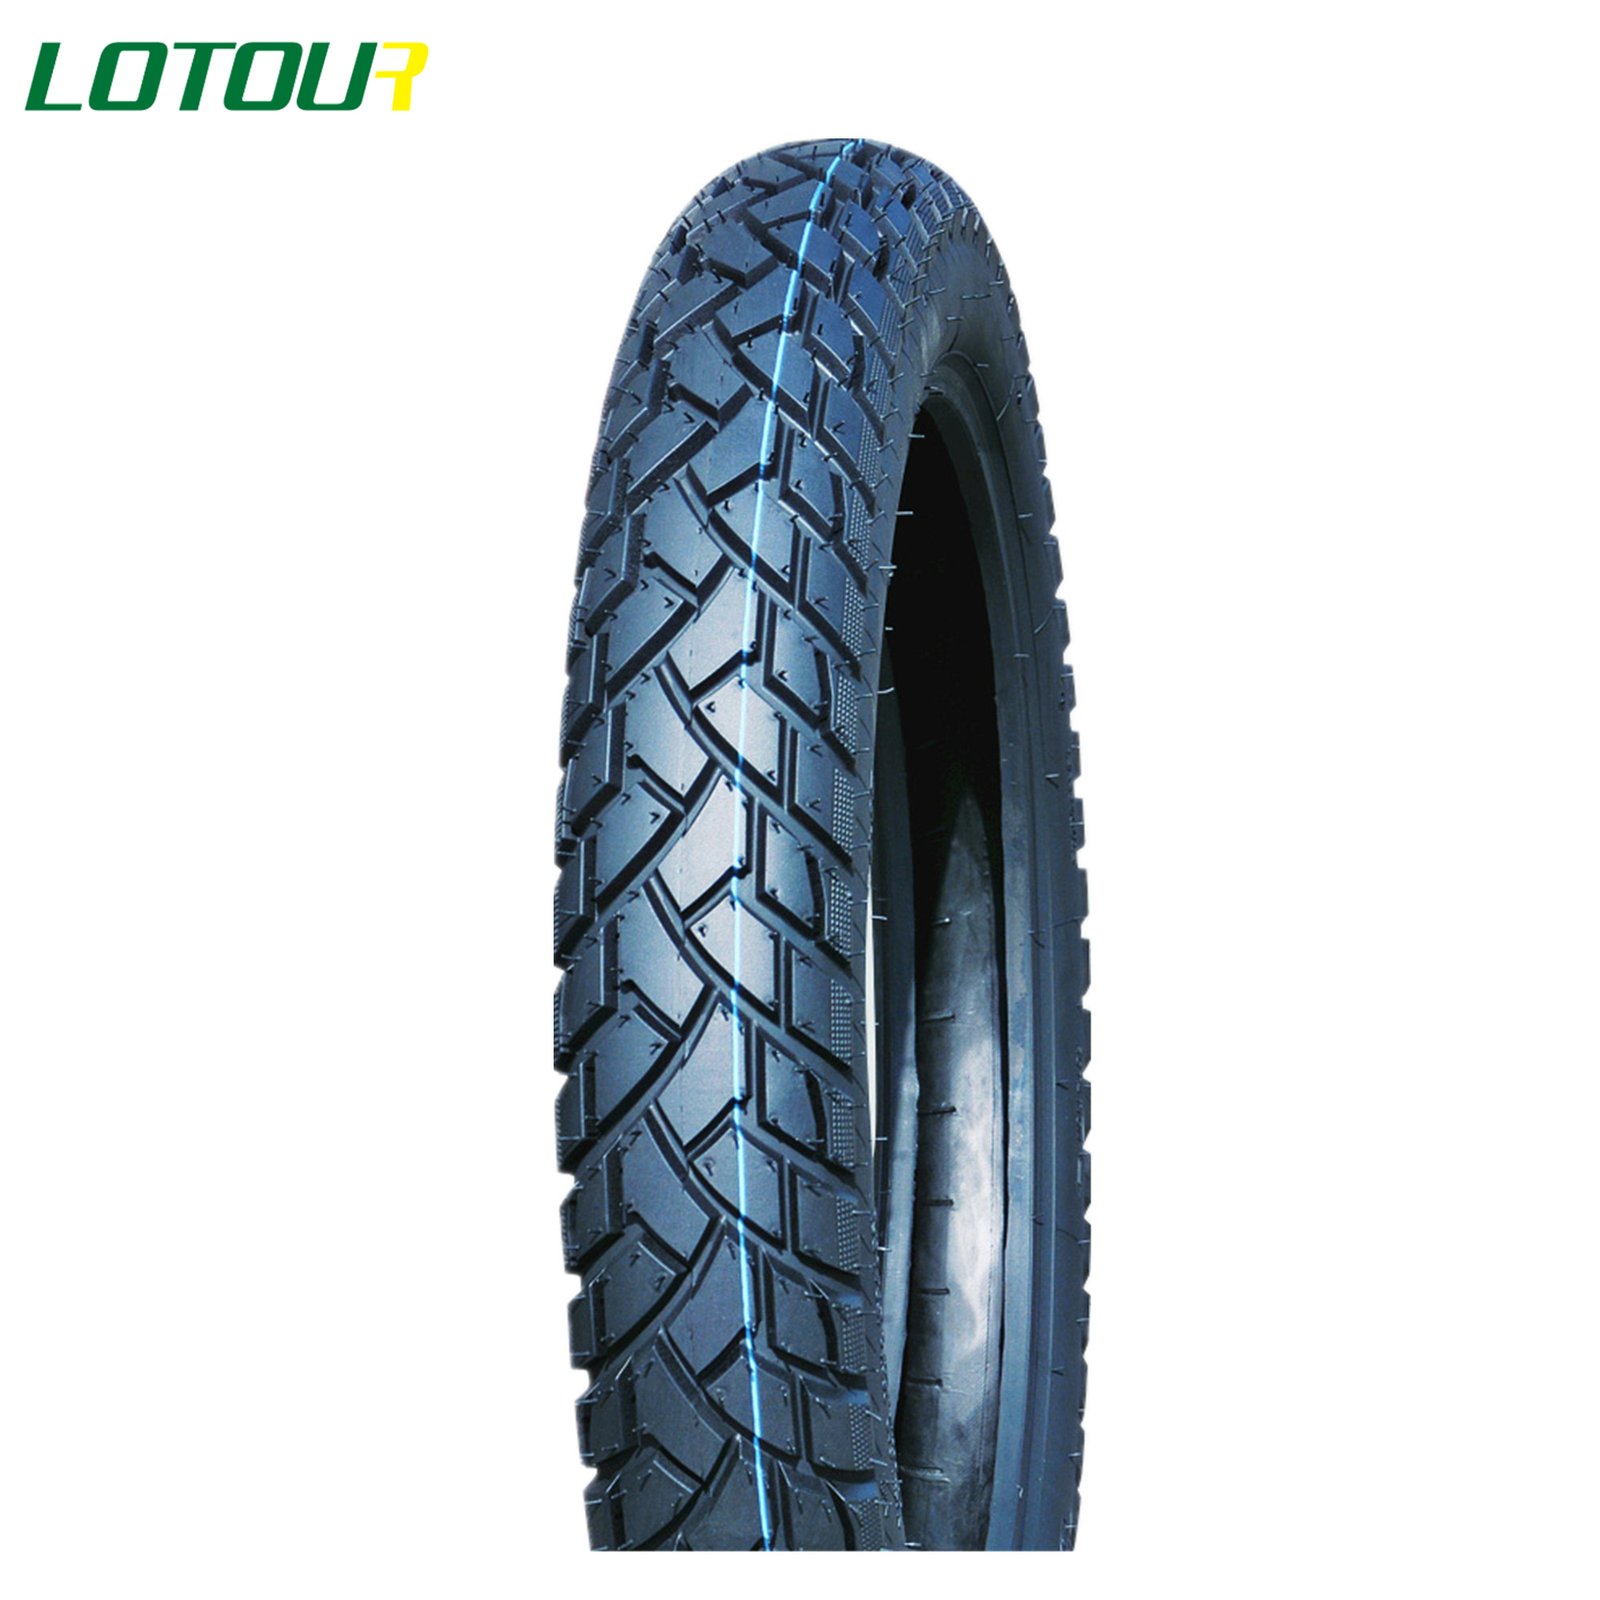 Lotour Tire M2103